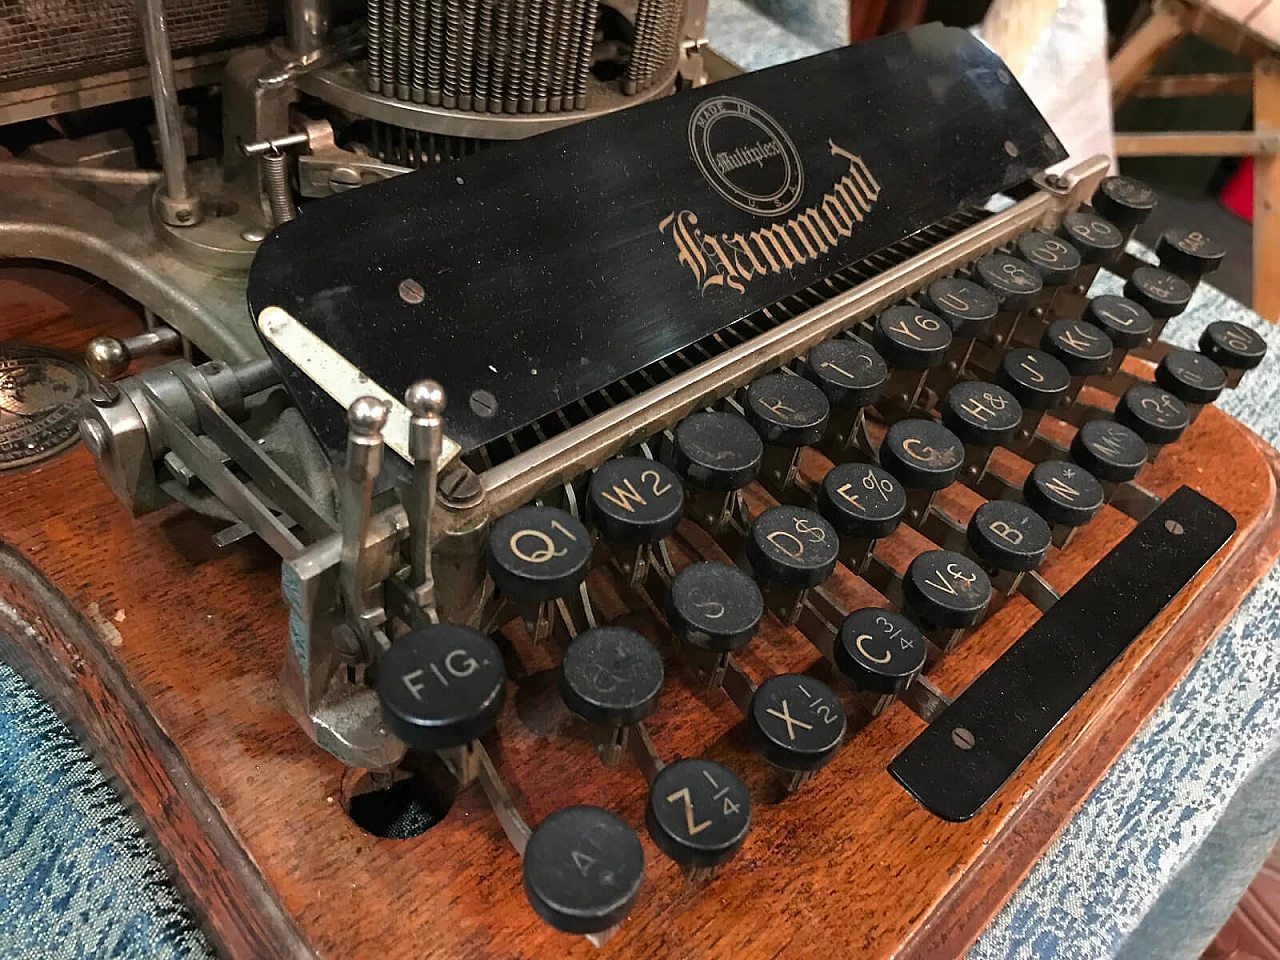 American typewriter "Multiplex" for Hammond 3